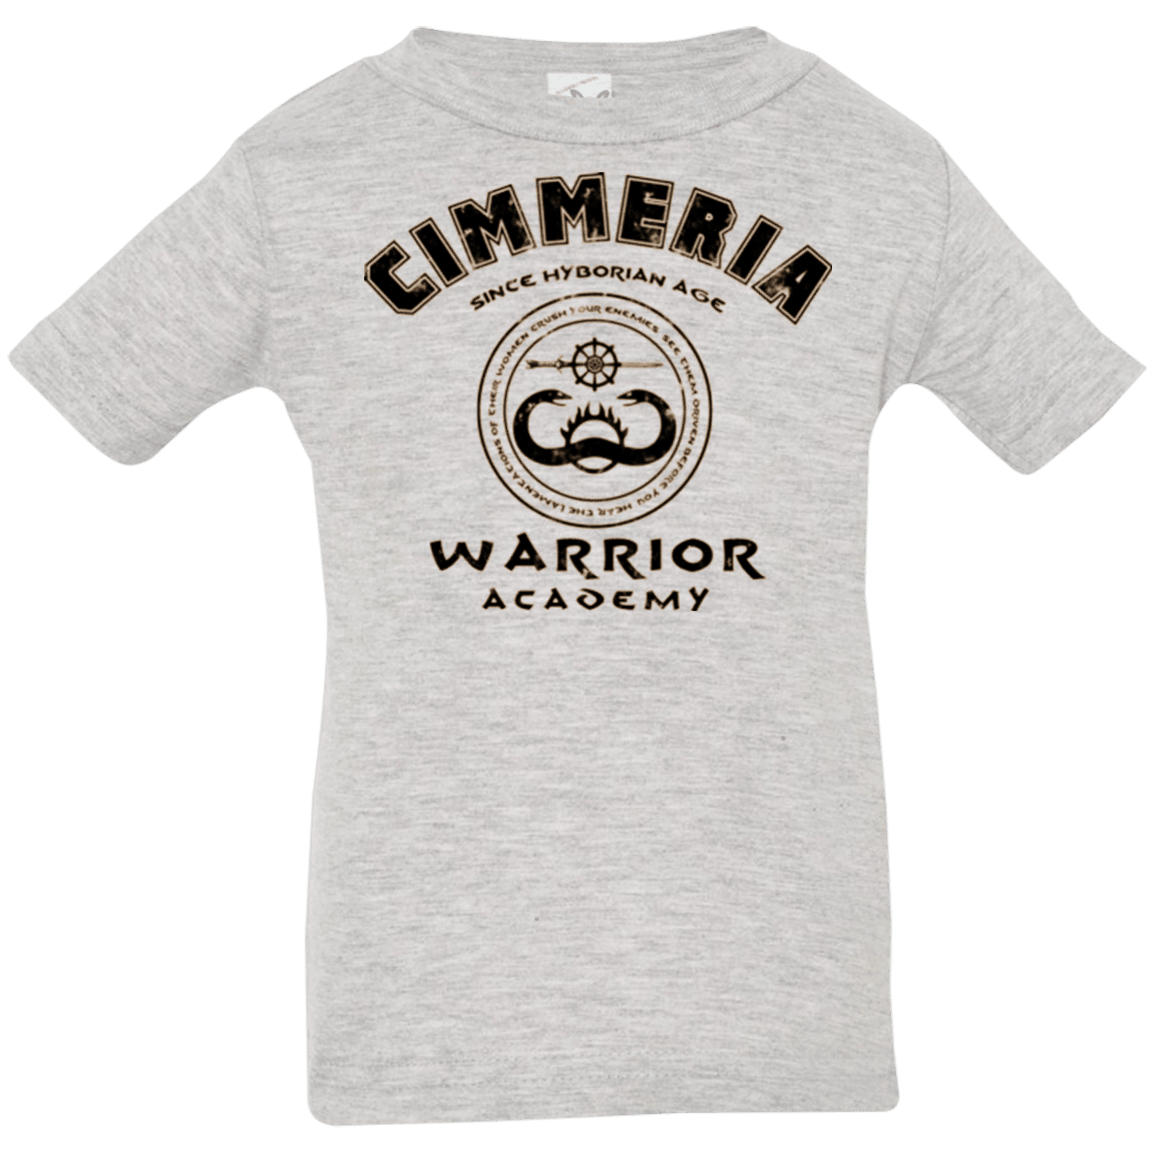 T-Shirts Heather / 6 Months Crimmeria Warrior academy Infant Premium T-Shirt